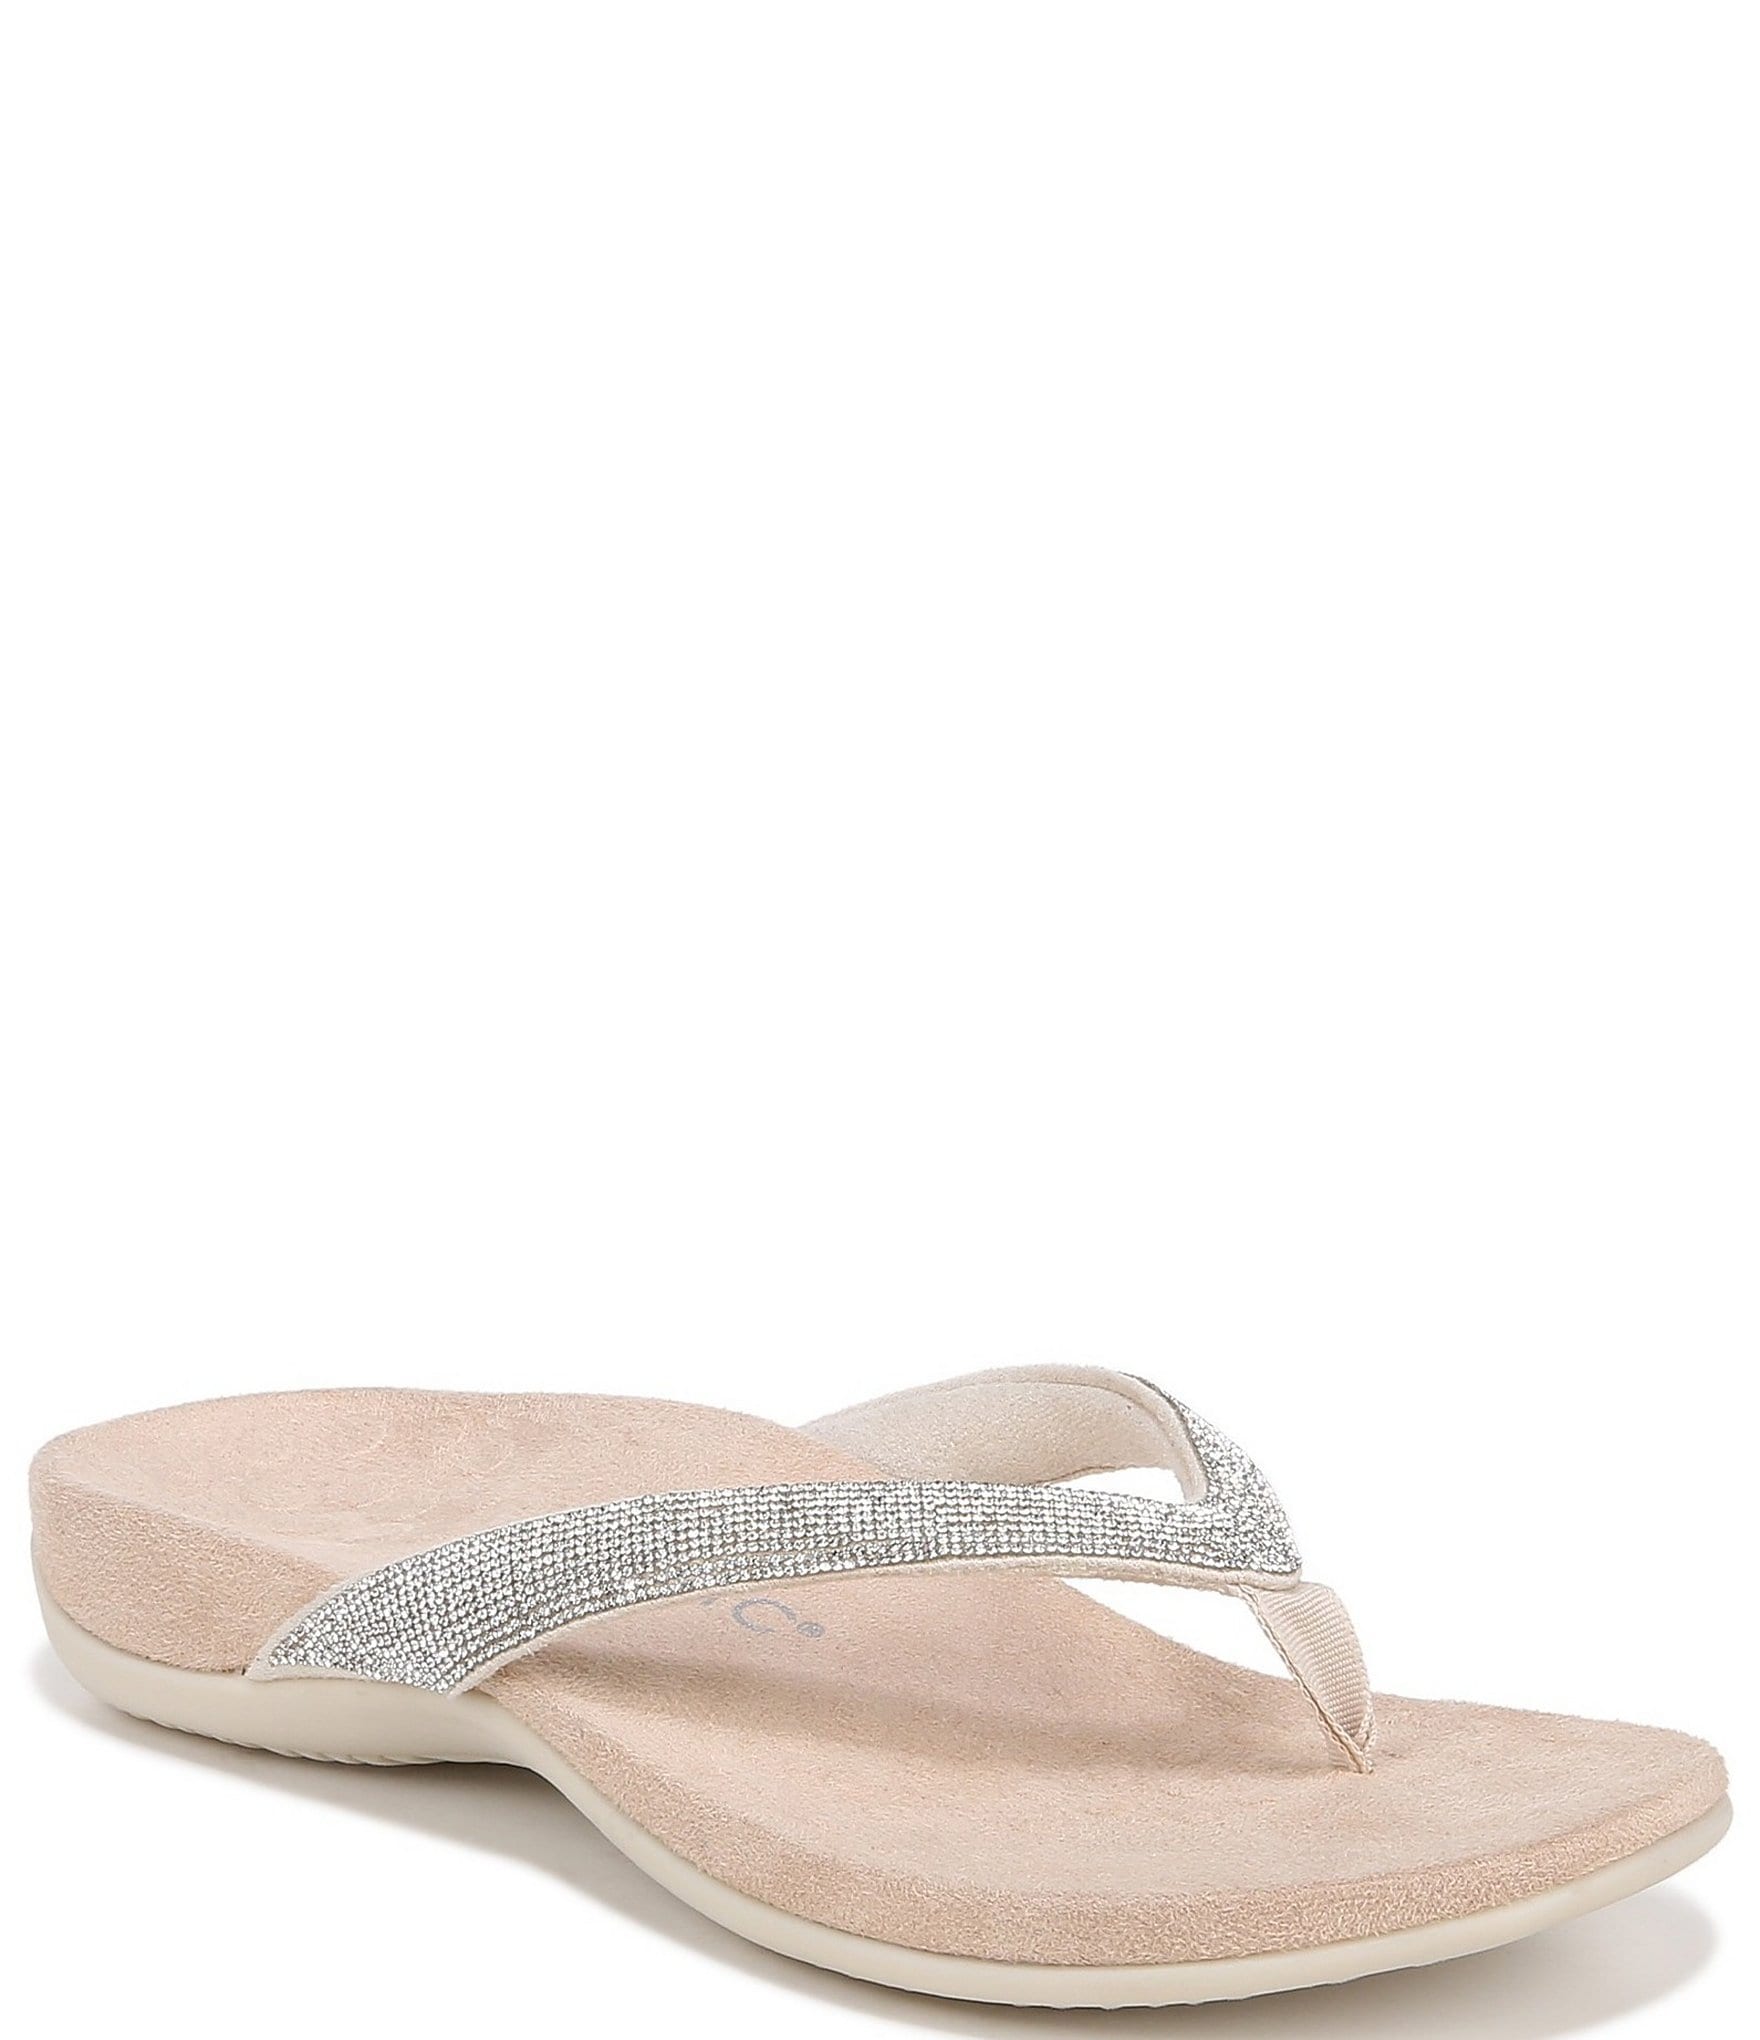 flip flops: Women's Wide Width Sandals